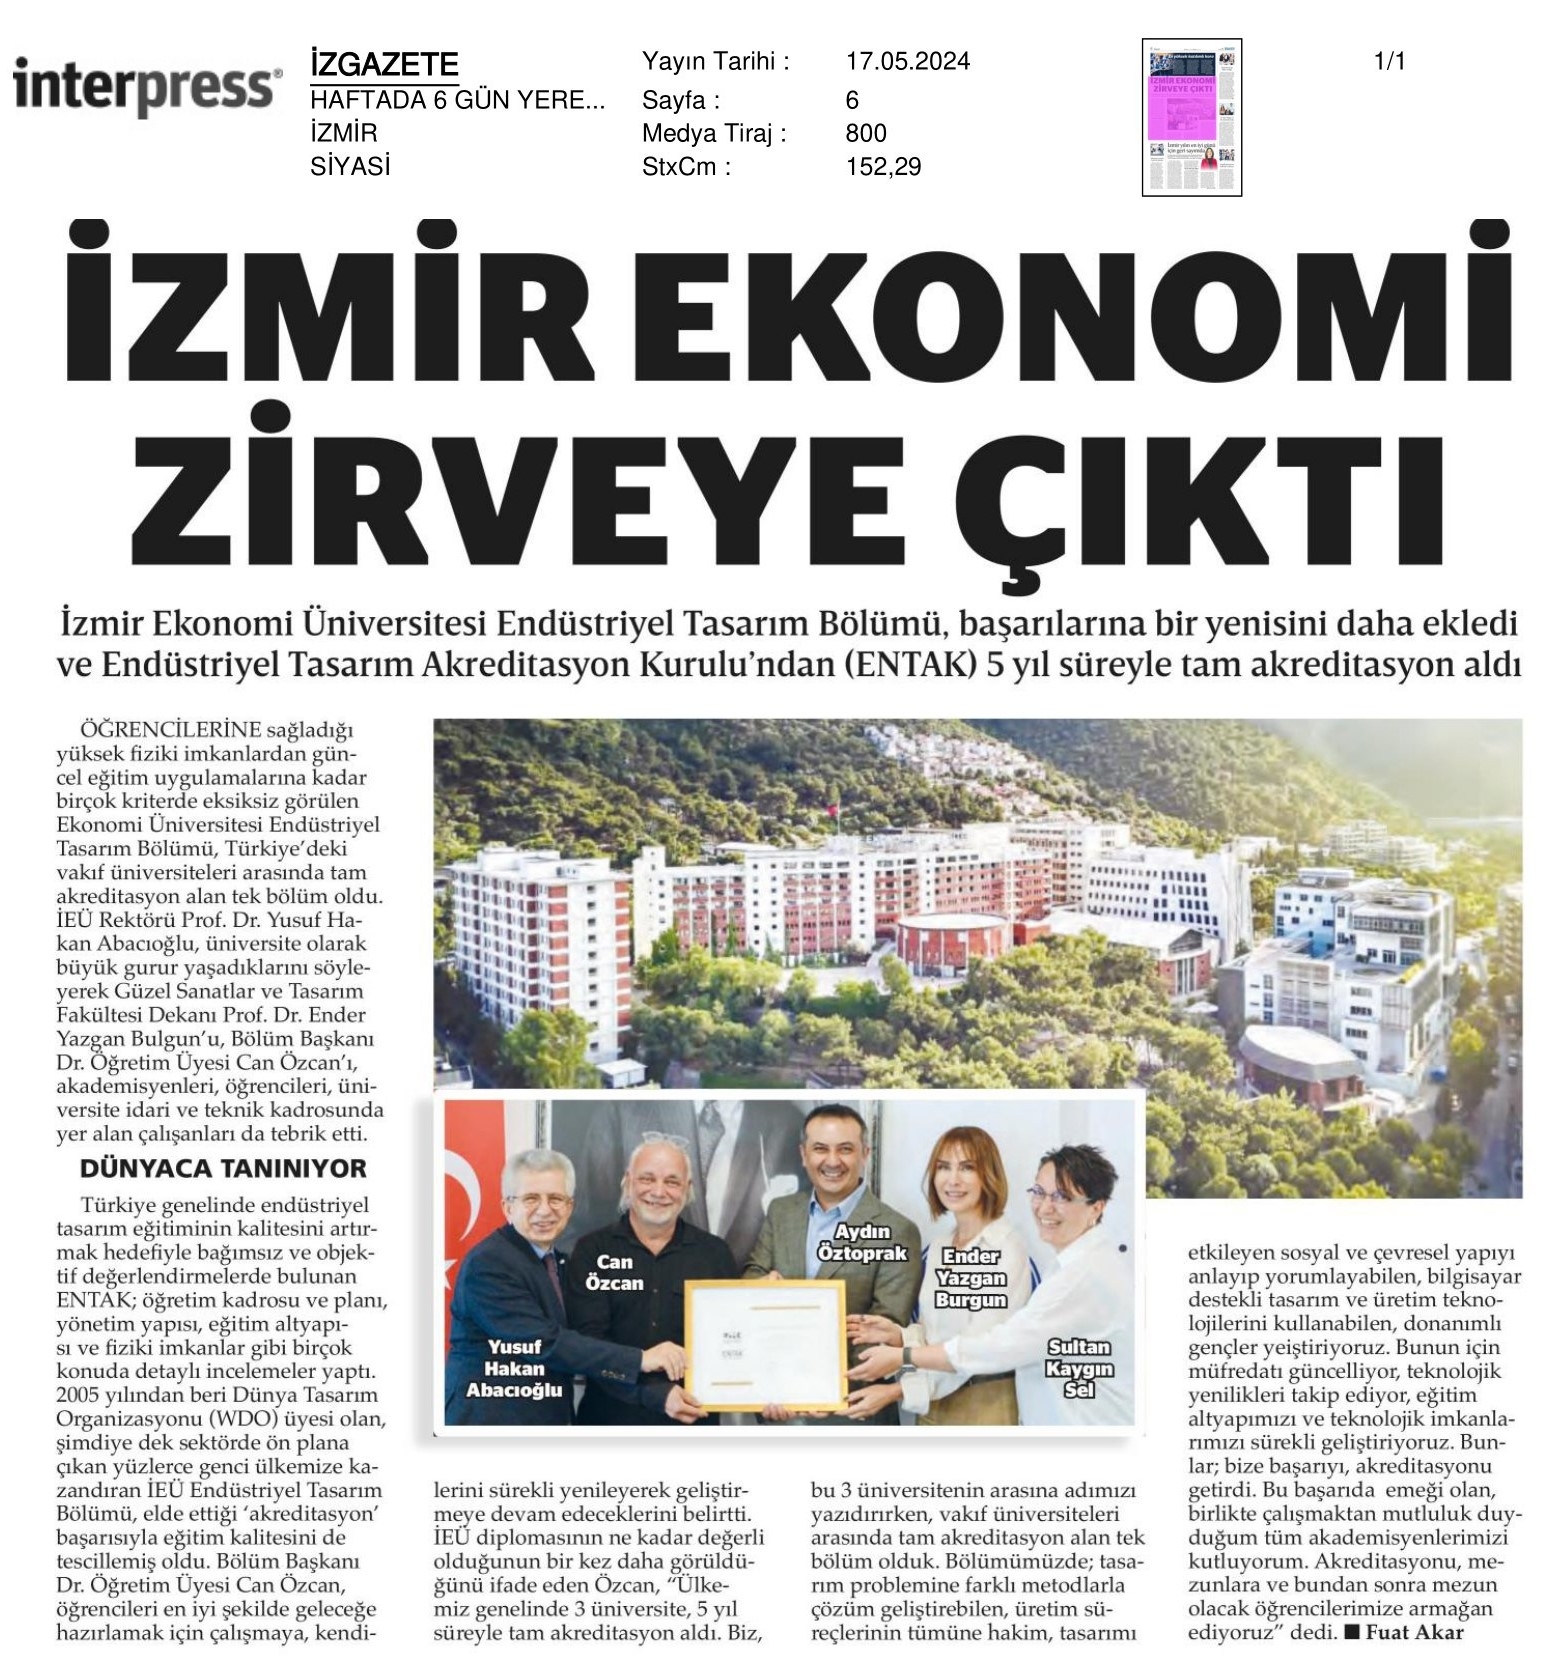 İzmir Ekonomi Zirveye Çıktı